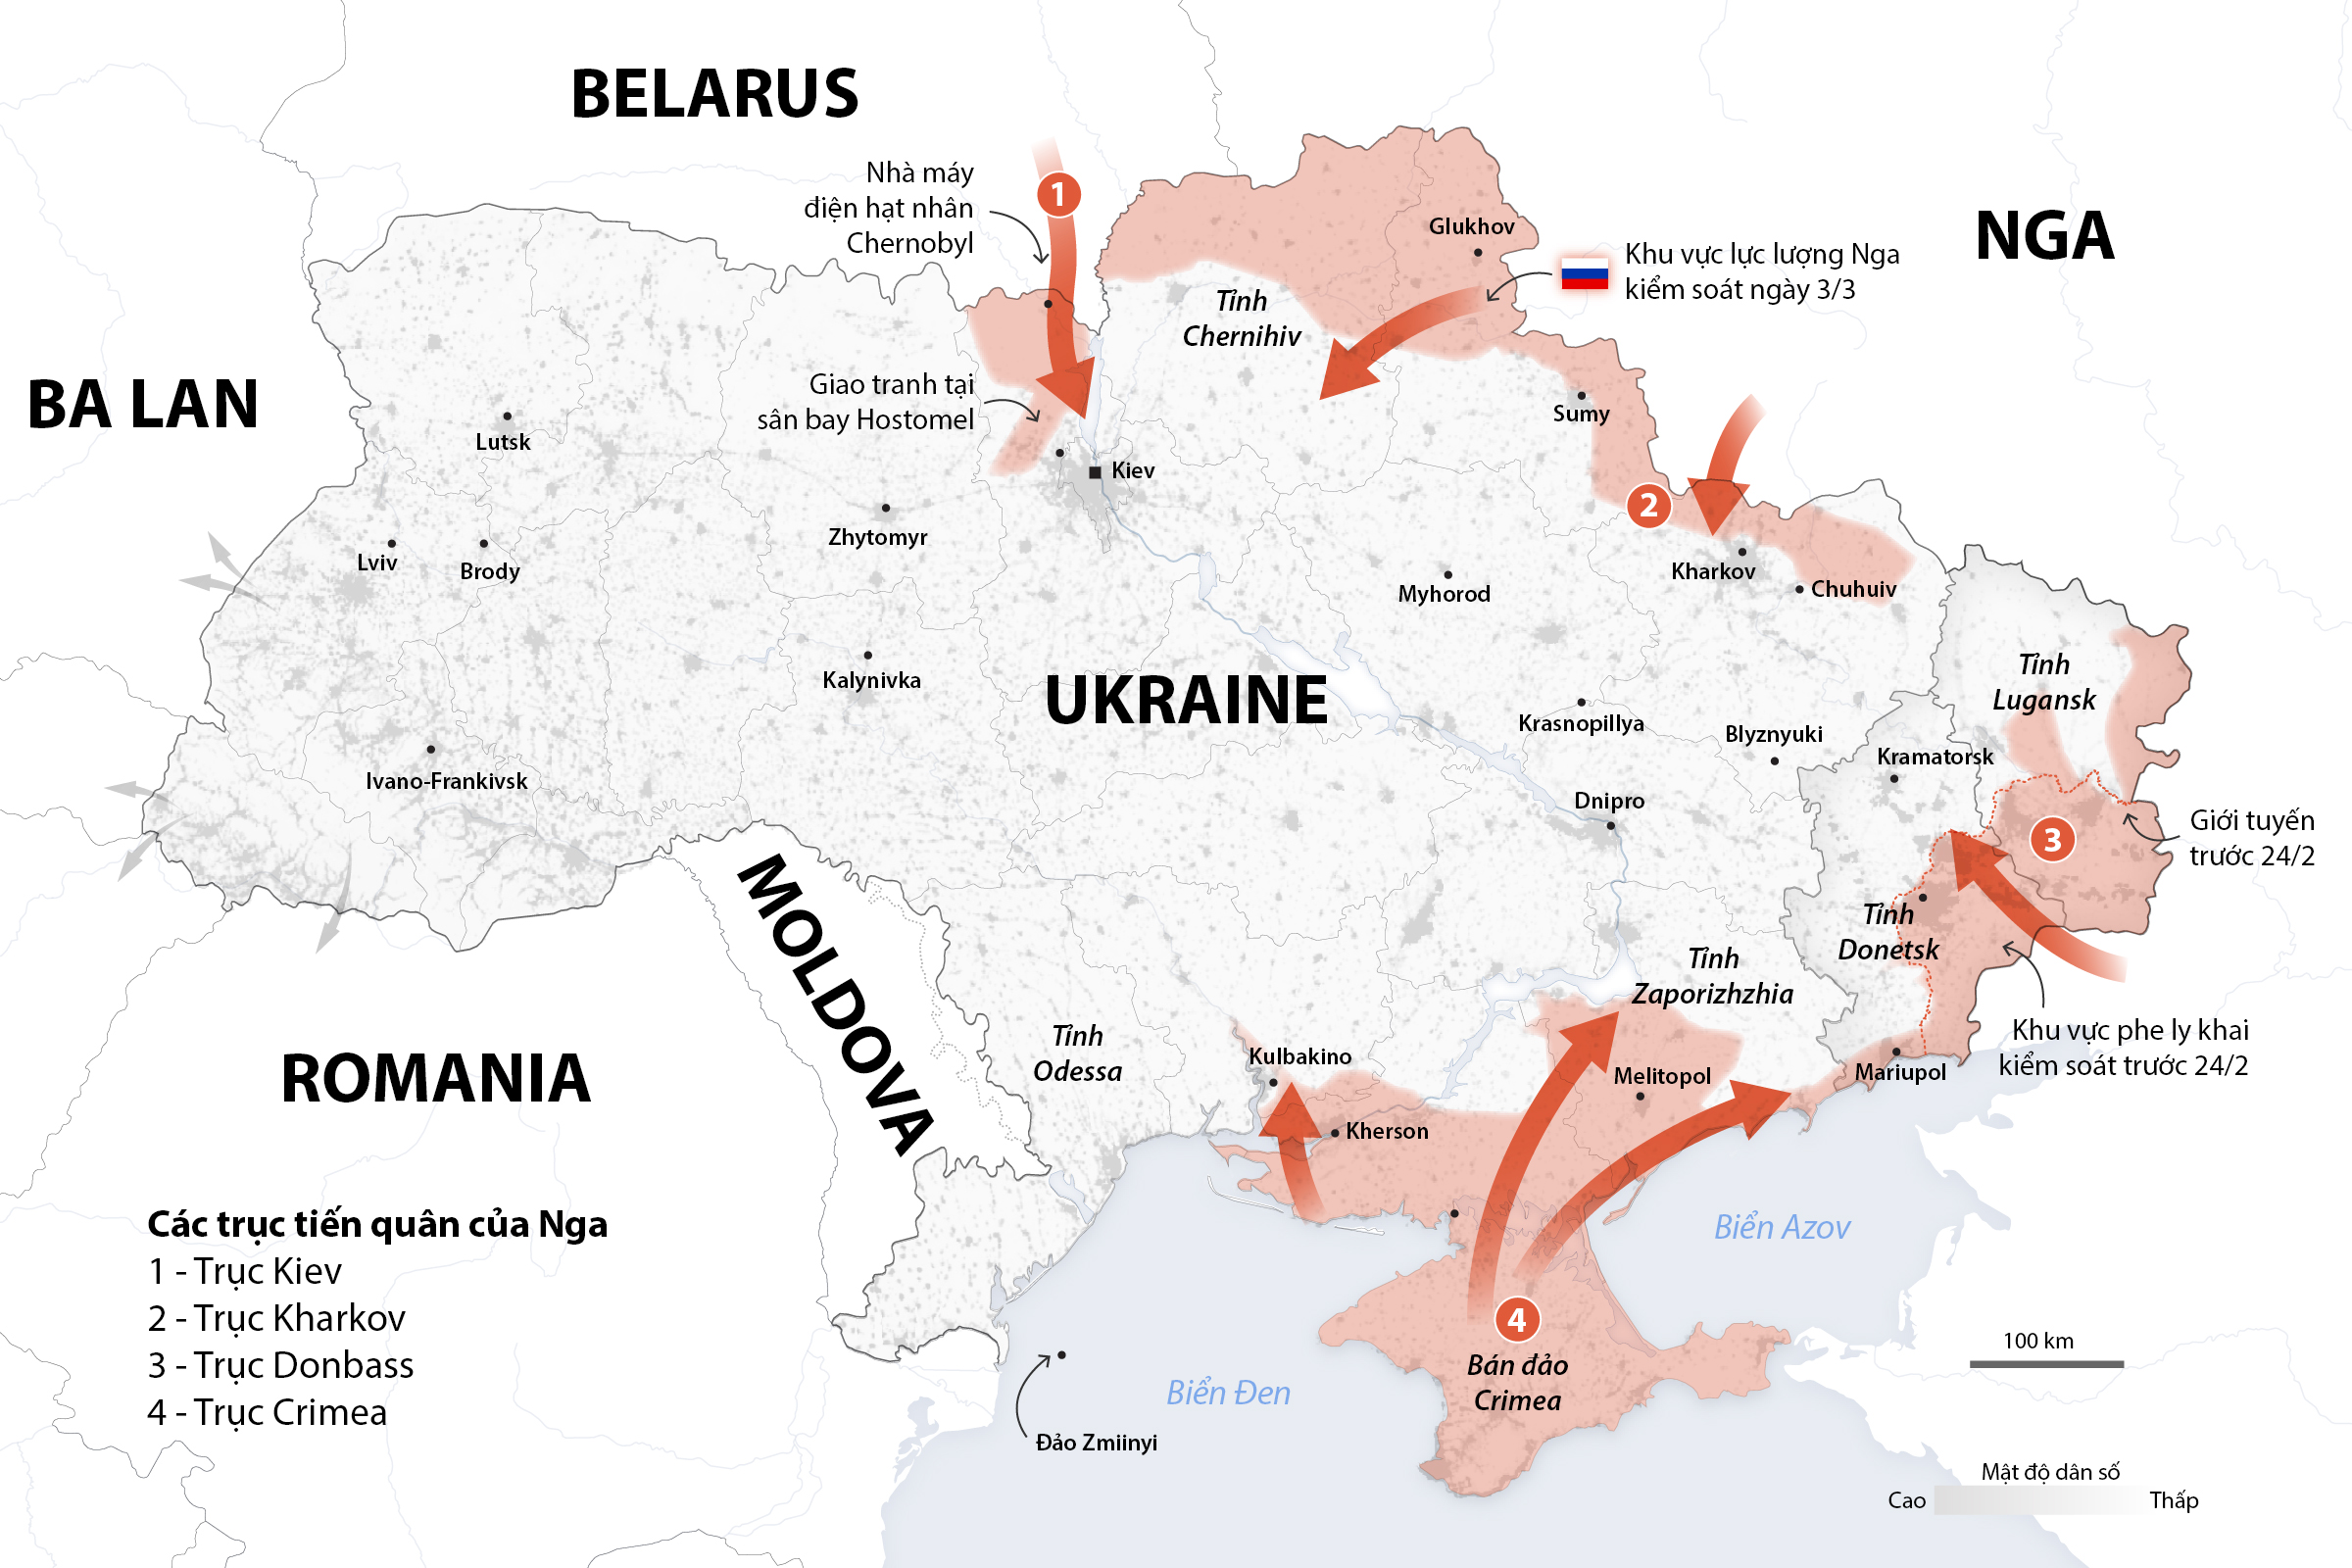 Các mũi tiến quân của lực lượng Nga tại Ukraine. Bấm vào ảnh để xem chi tiết.